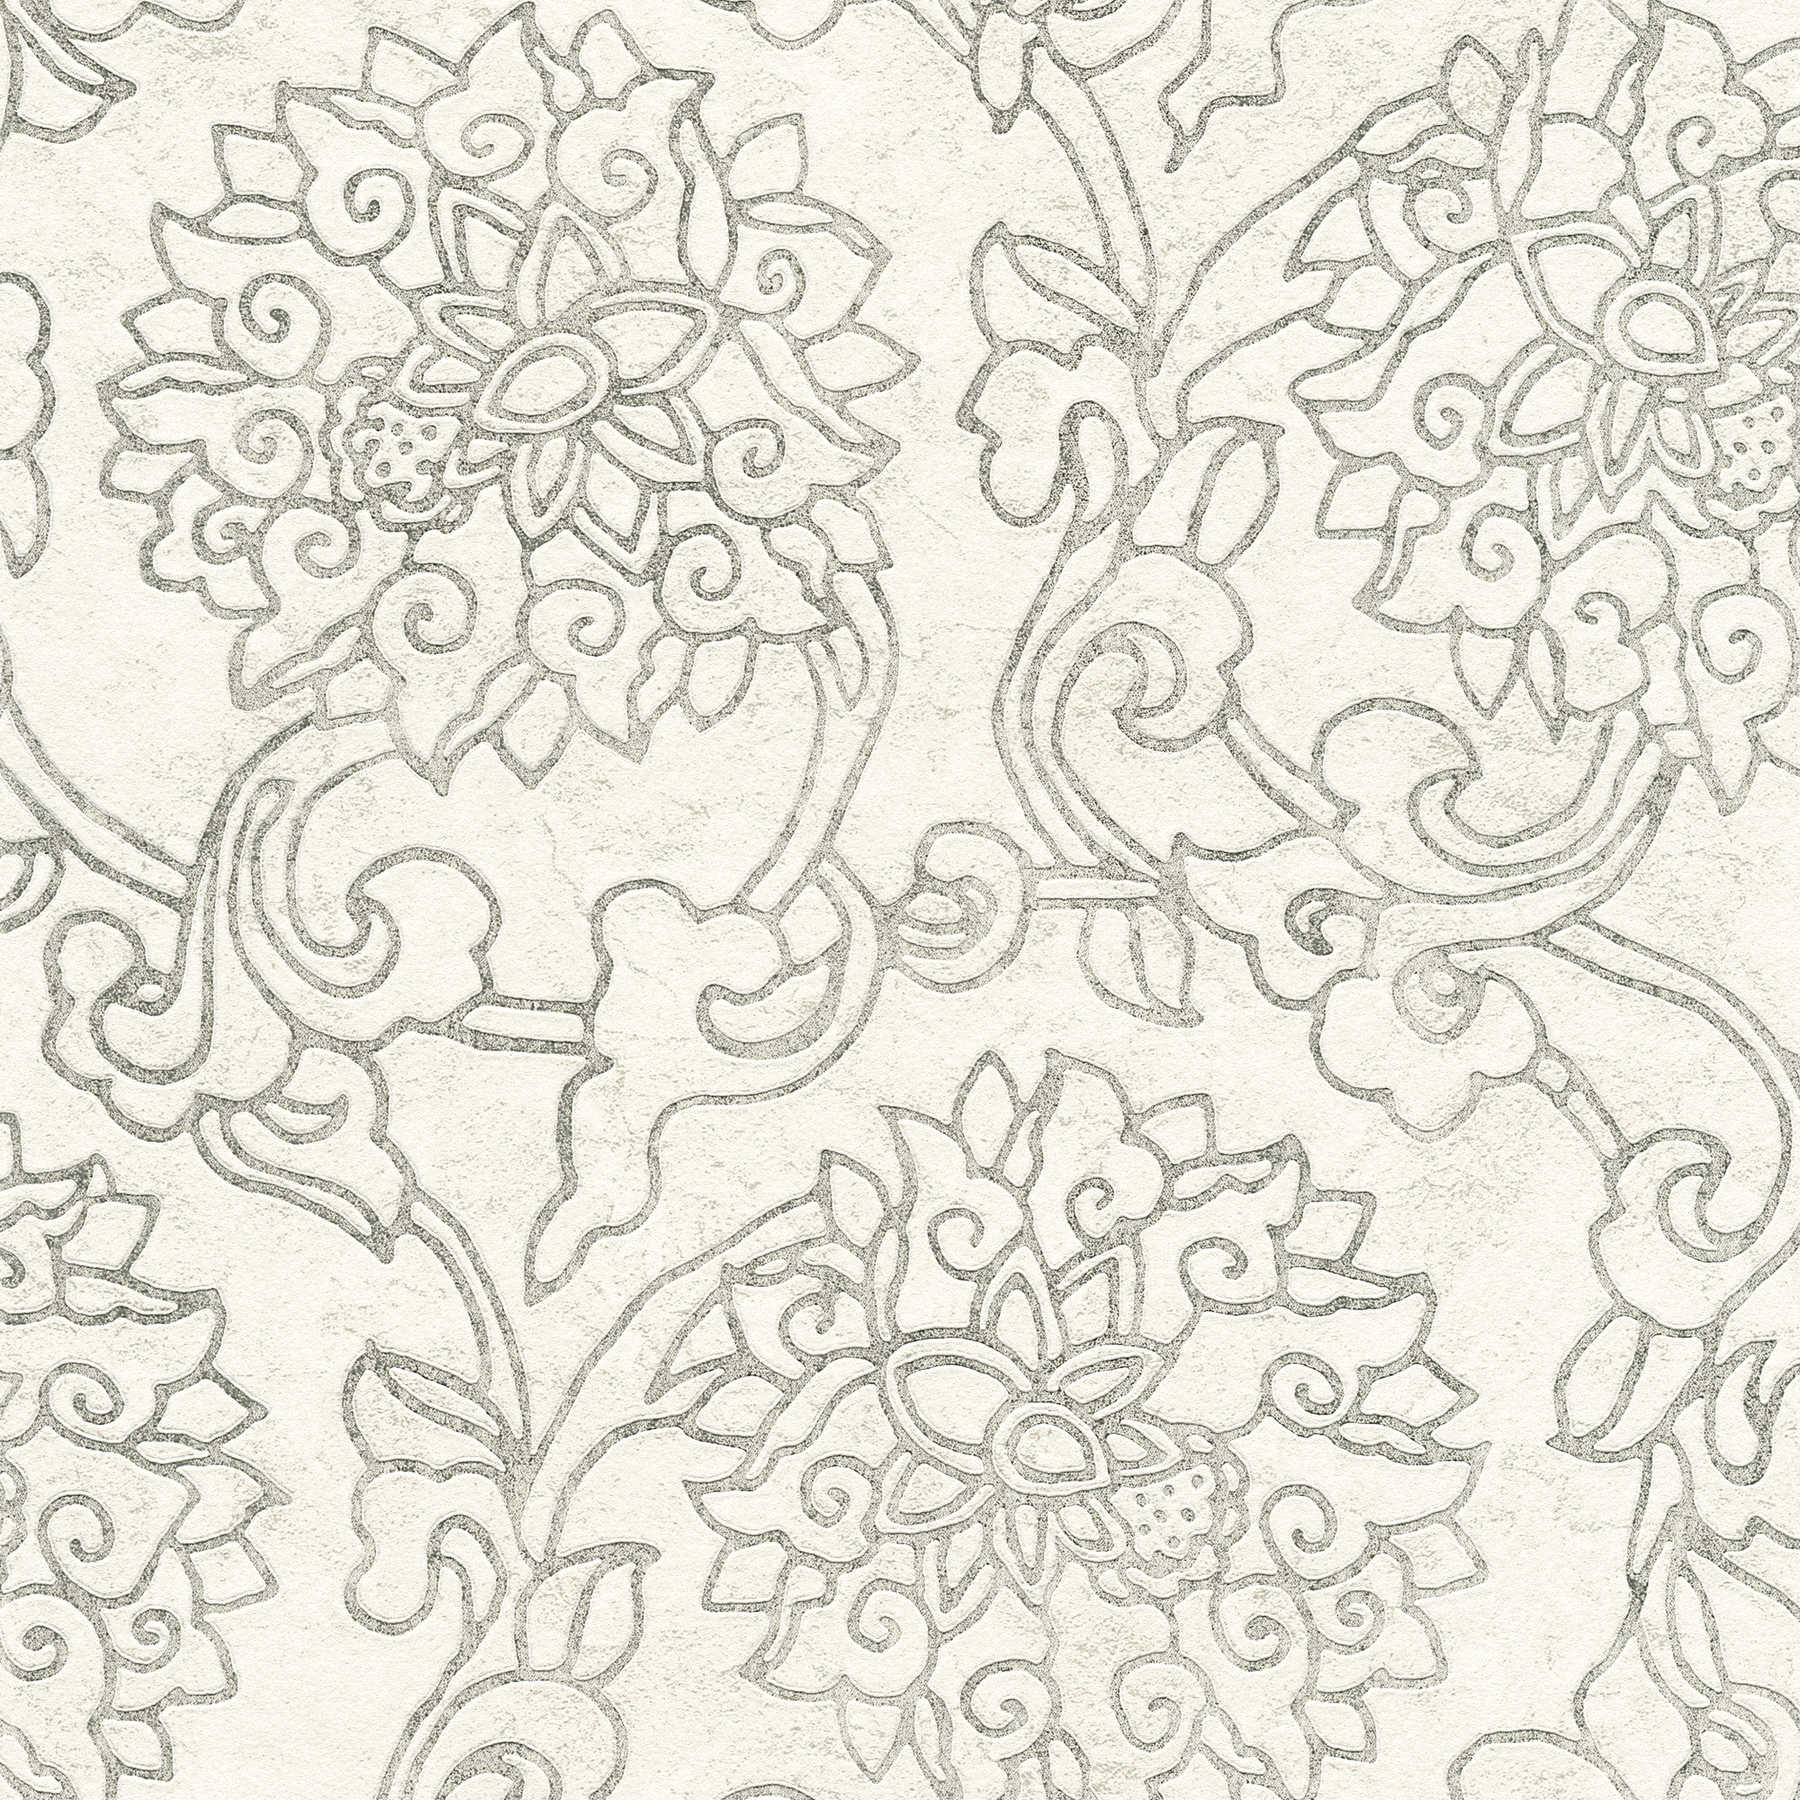 Papier peint ornemental floral de style asiatique avec accents dorés - blanc, argent, gris
